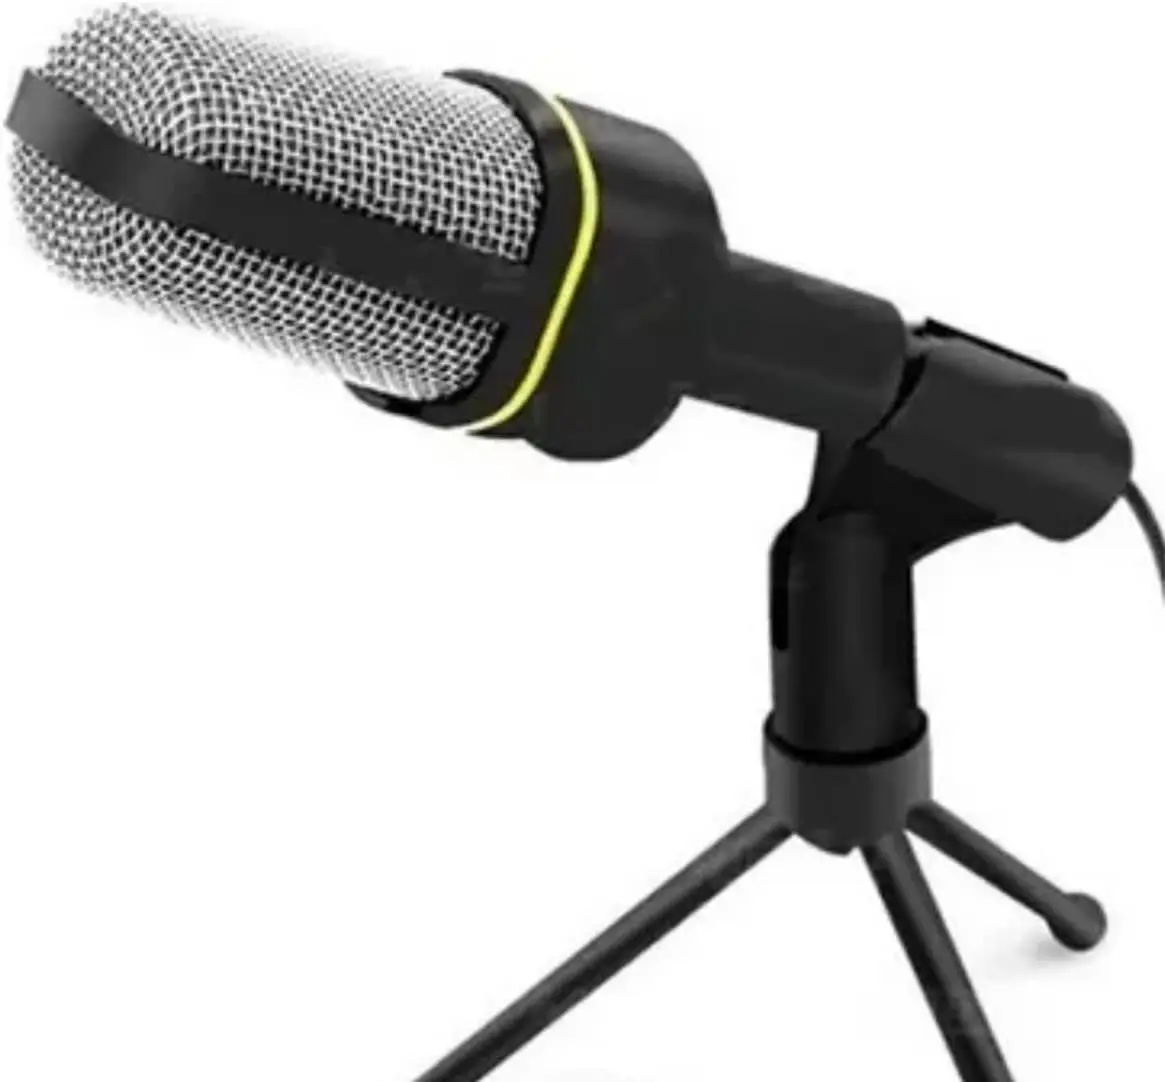 

NEW Microfone Condensador Profissional De Mesa Com Tripé Para Gravação Em Estúdio PCs E Notebooks Portátil